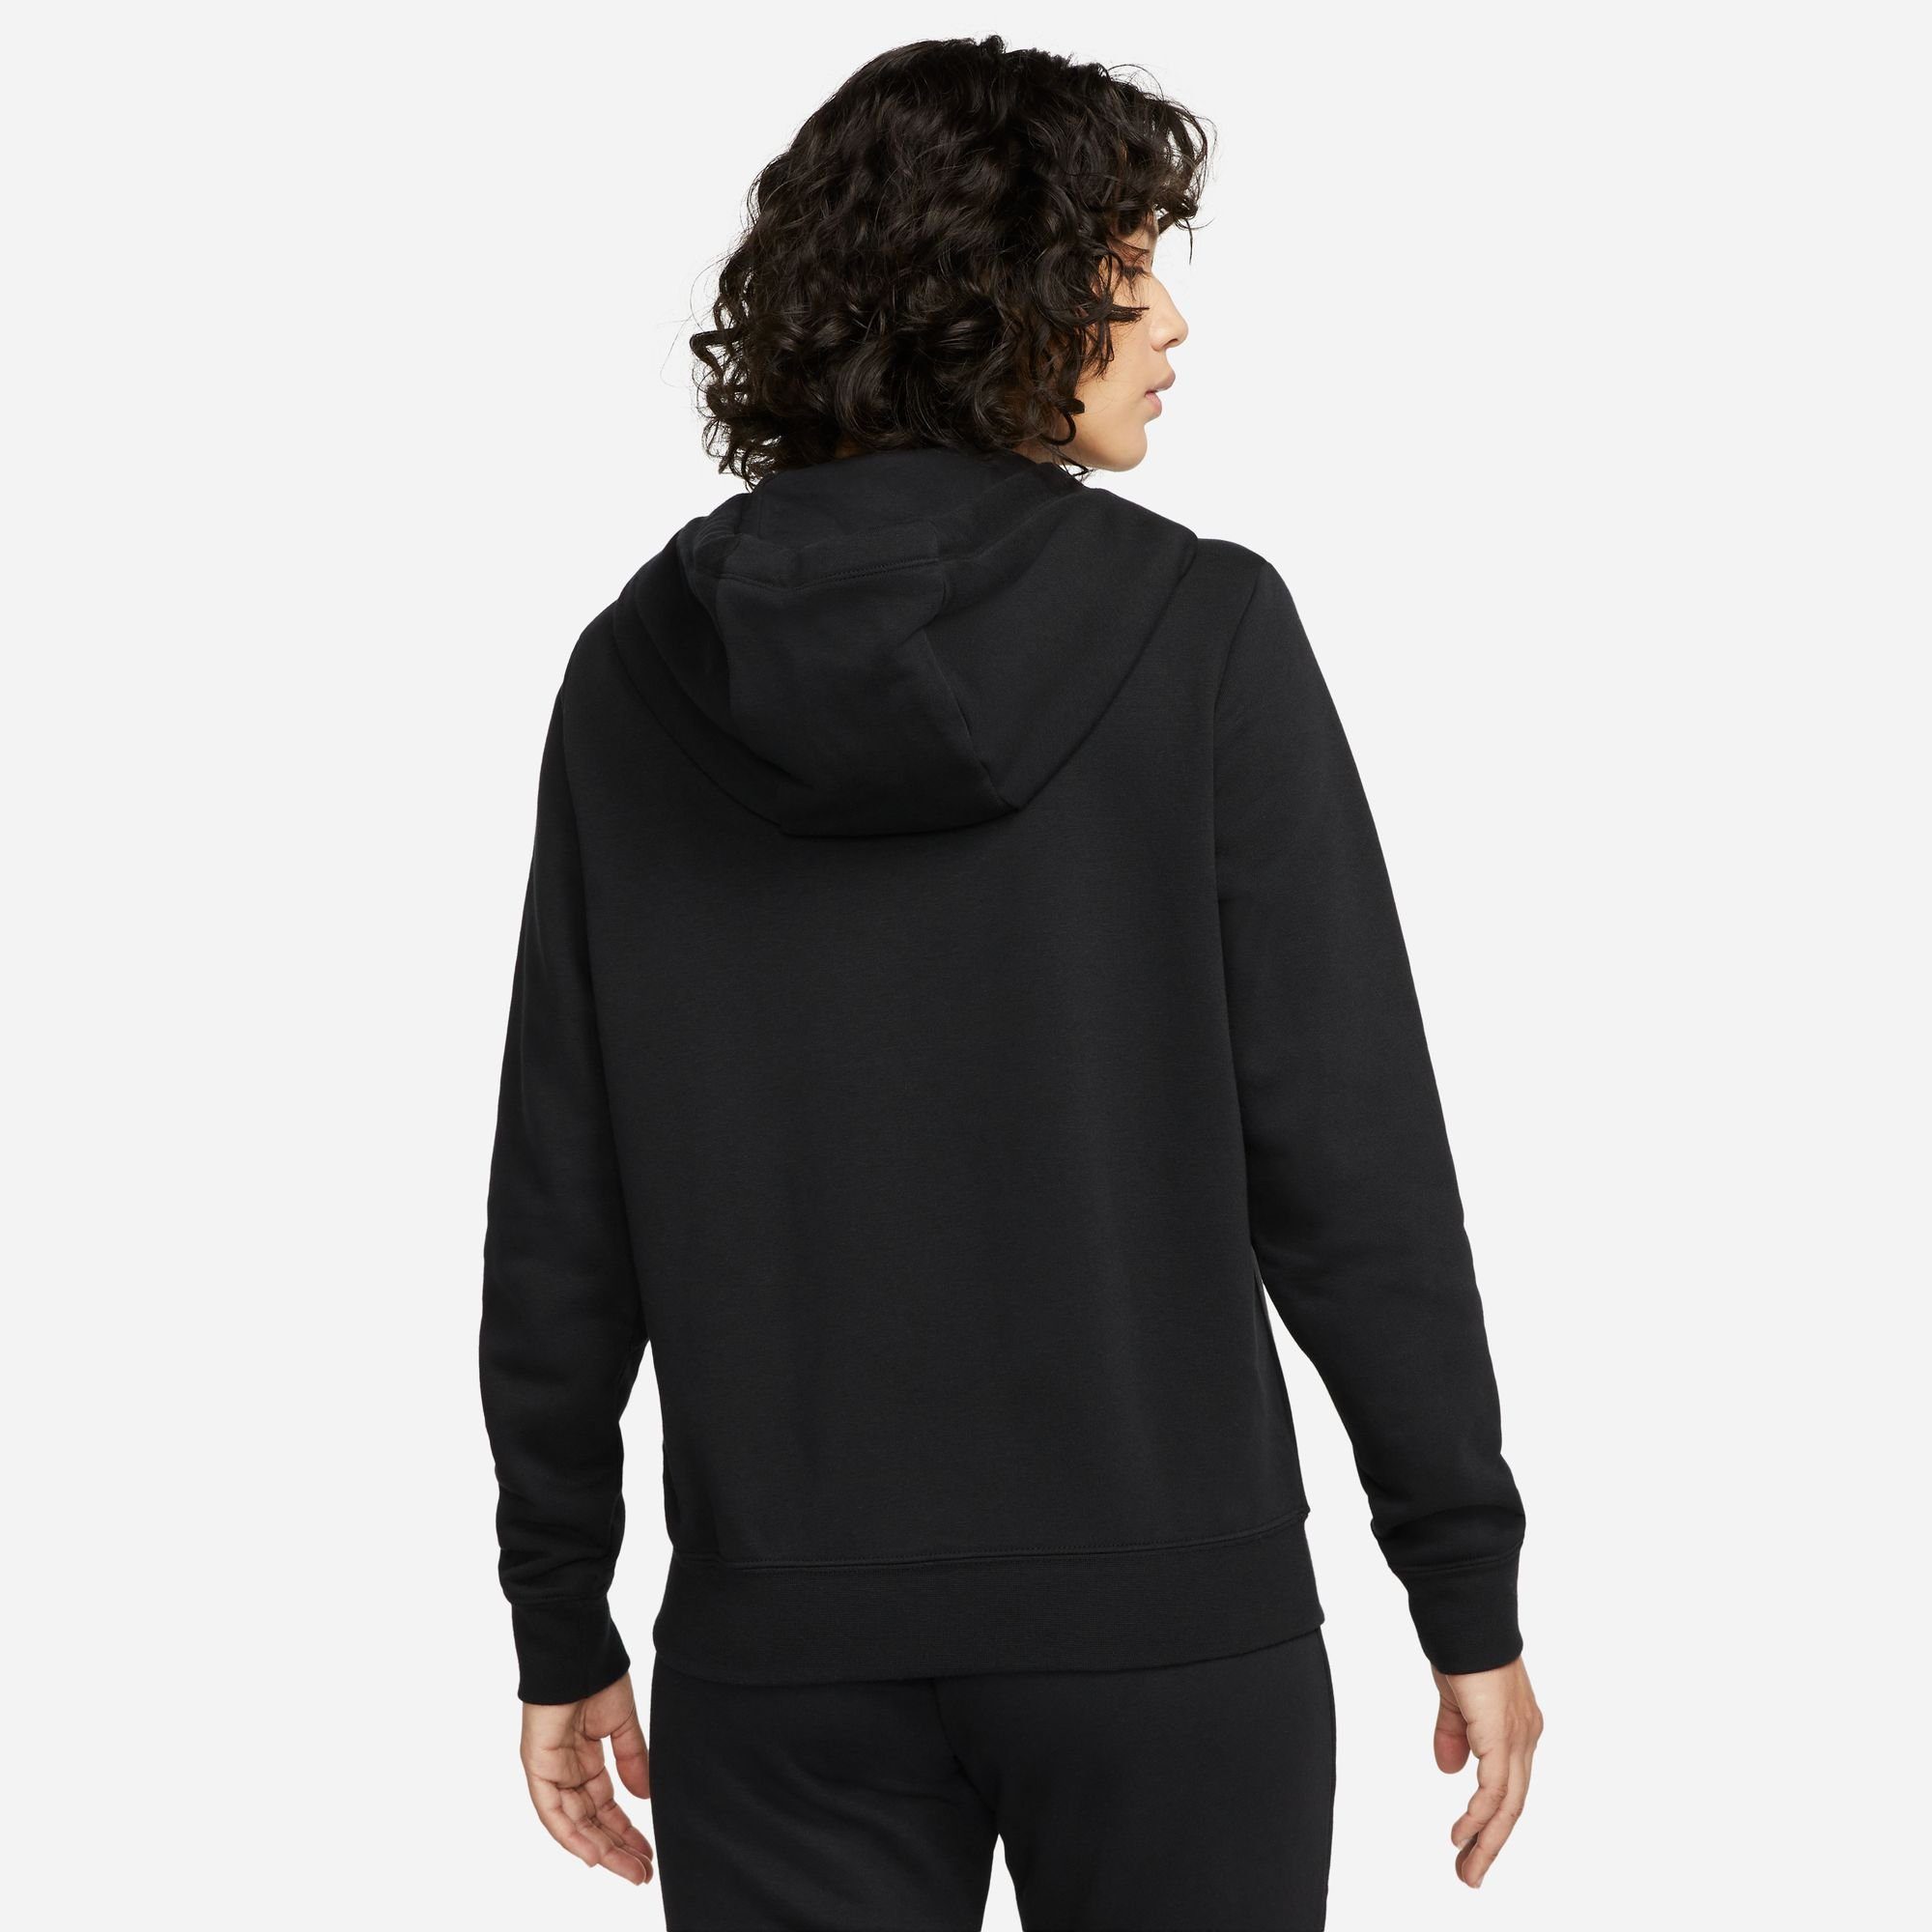 BLACK/WHITE Hoodie Women's Club Sportswear Full-Zip Fleece Kapuzensweatjacke Nike